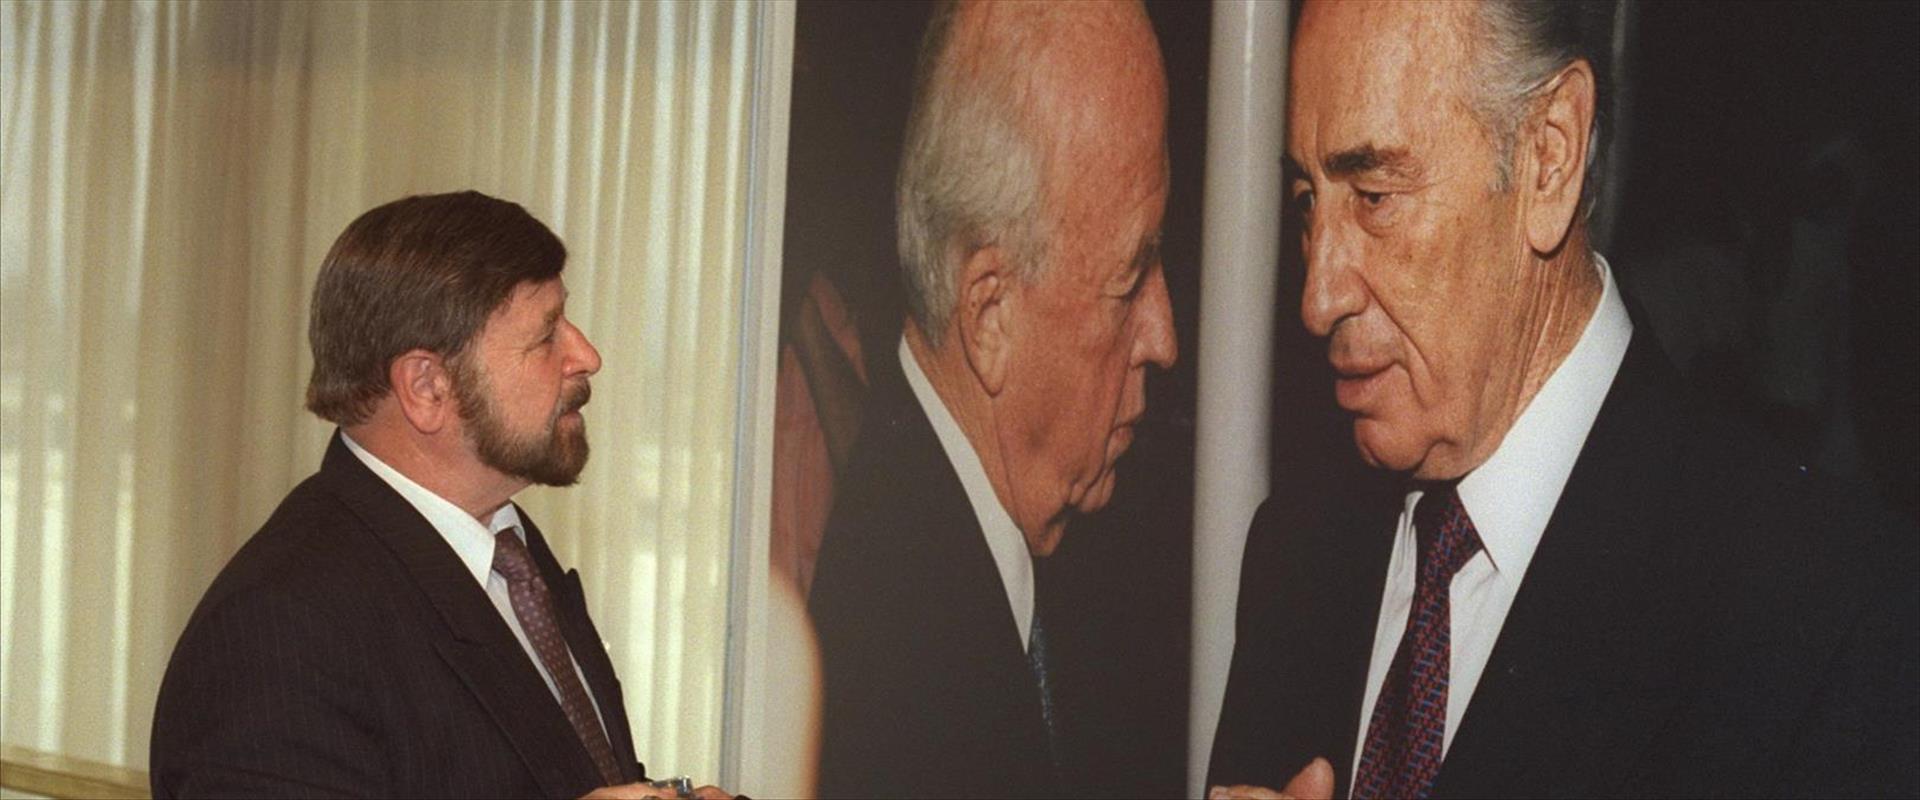 וייס מתבונן בתמונה בתערוכה בכנסת לזכר רבין, 1995